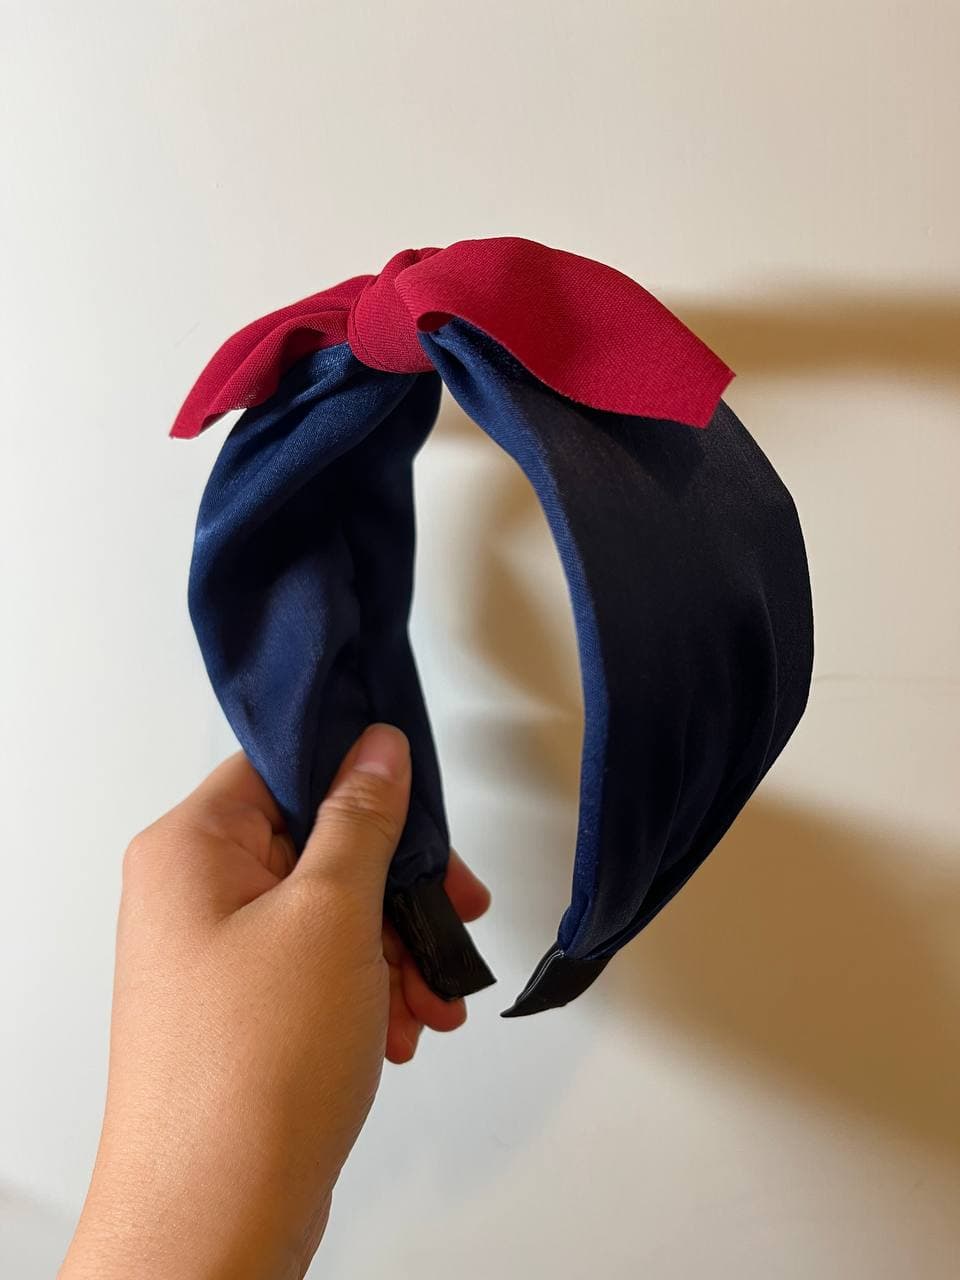 韓式人工髮箍- 深藍色紅蝴蝶結髮箍